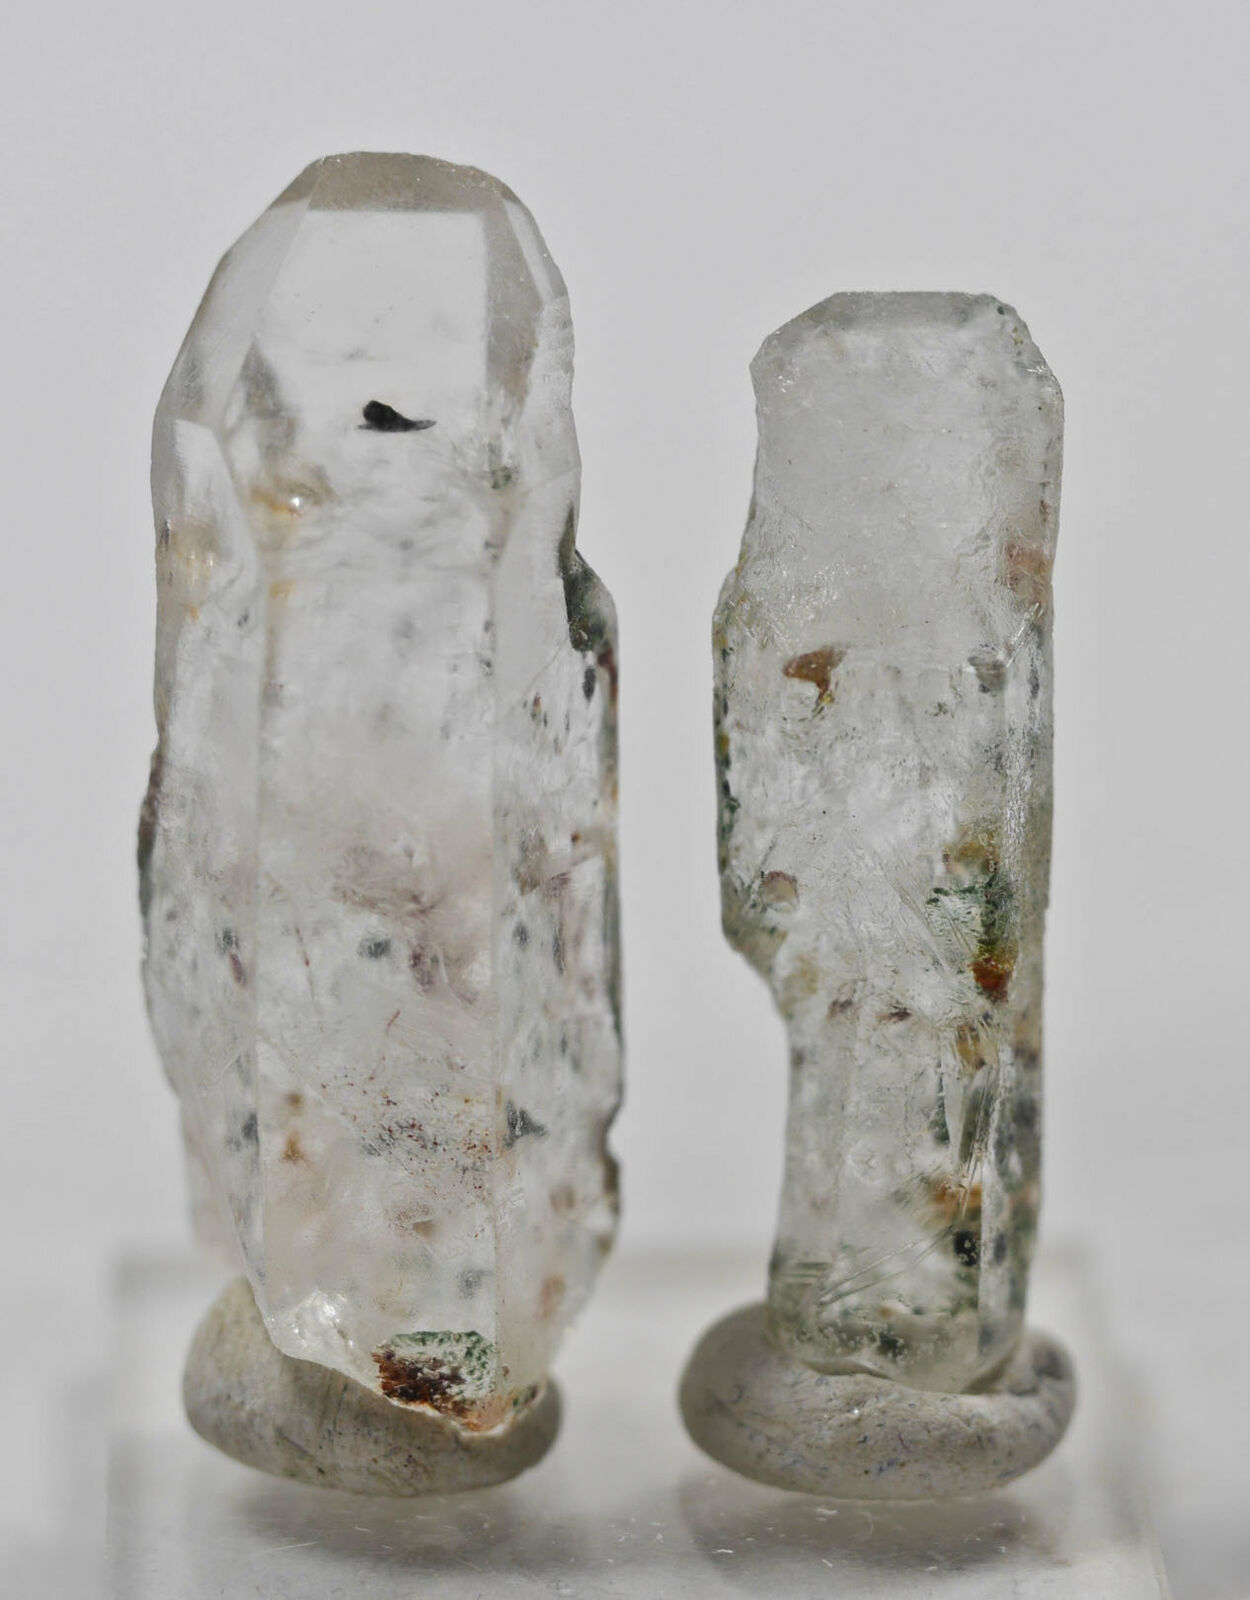 Quartz W Clinochlore Seraphinite, Raw Crystals - Gift, Home Decor, Stones, 17245